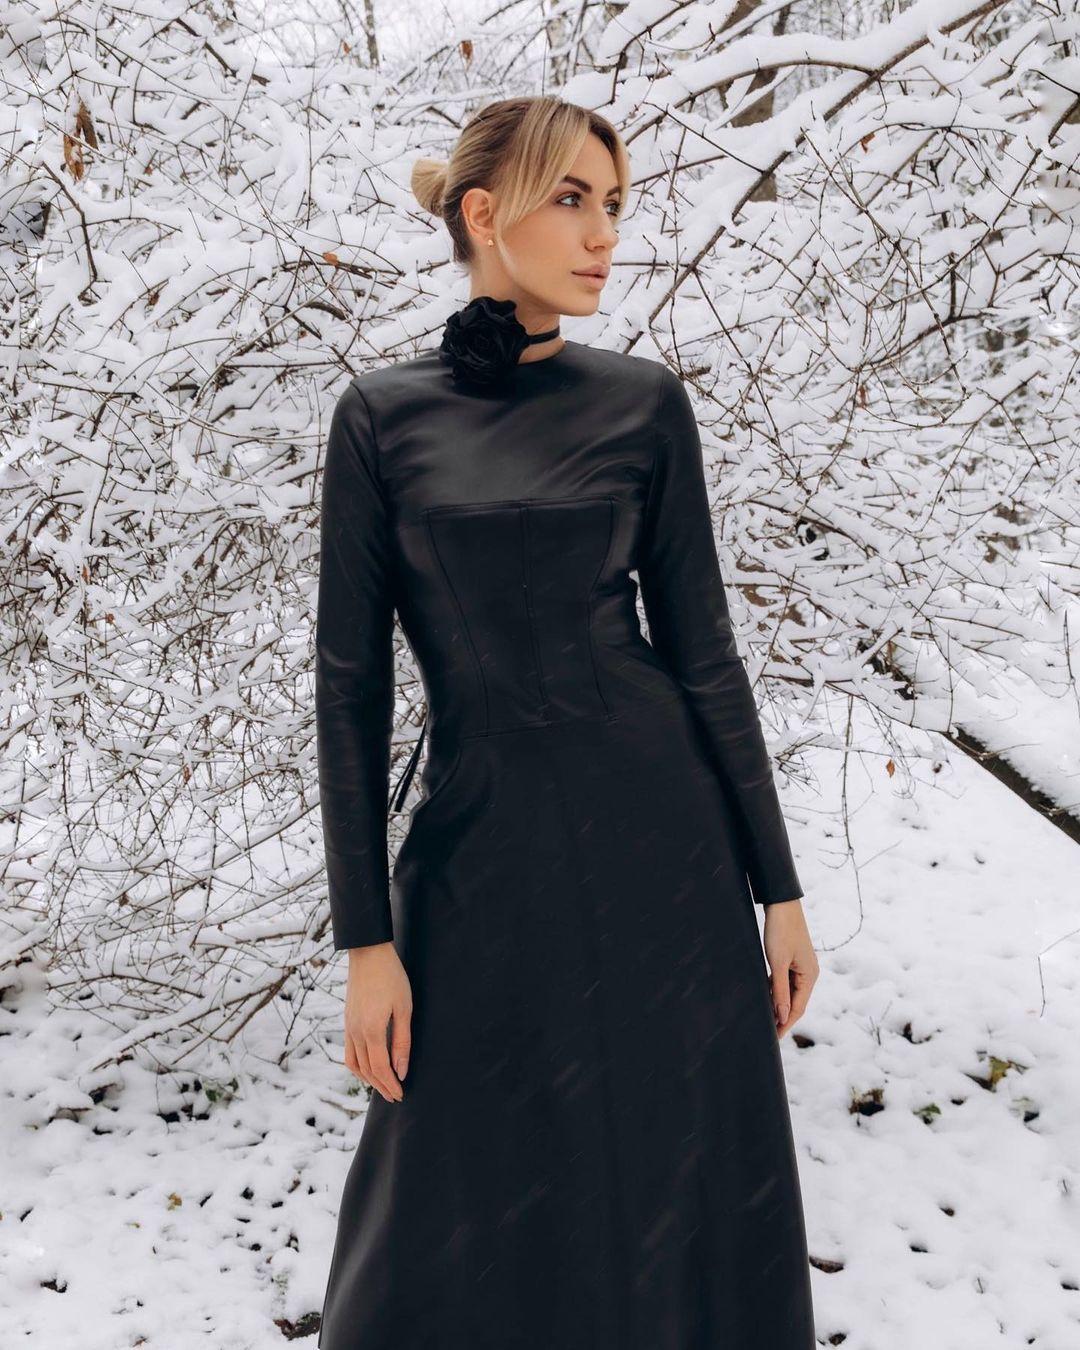 Леся Никитюк предстала в платье от украинского бренда / instagram.com/lesia_nikituk